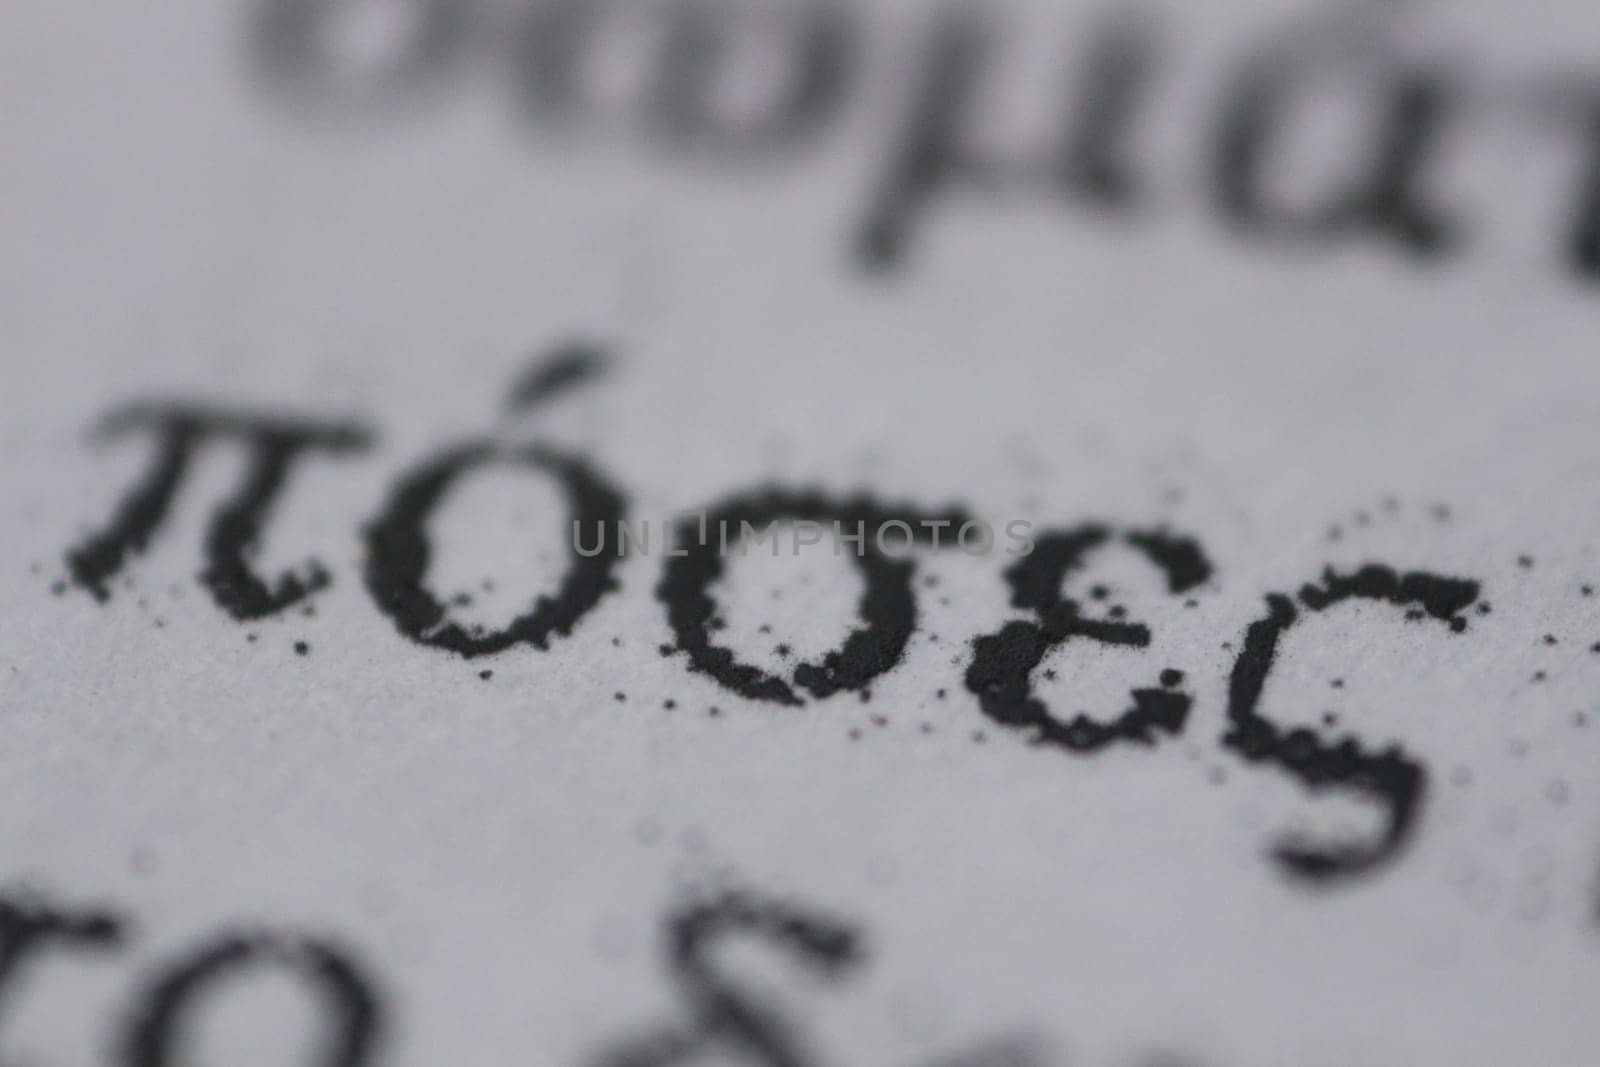 Greek Language Macro Magic: Capturing the Intricate Details of Printed Text by DakotaBOldeman